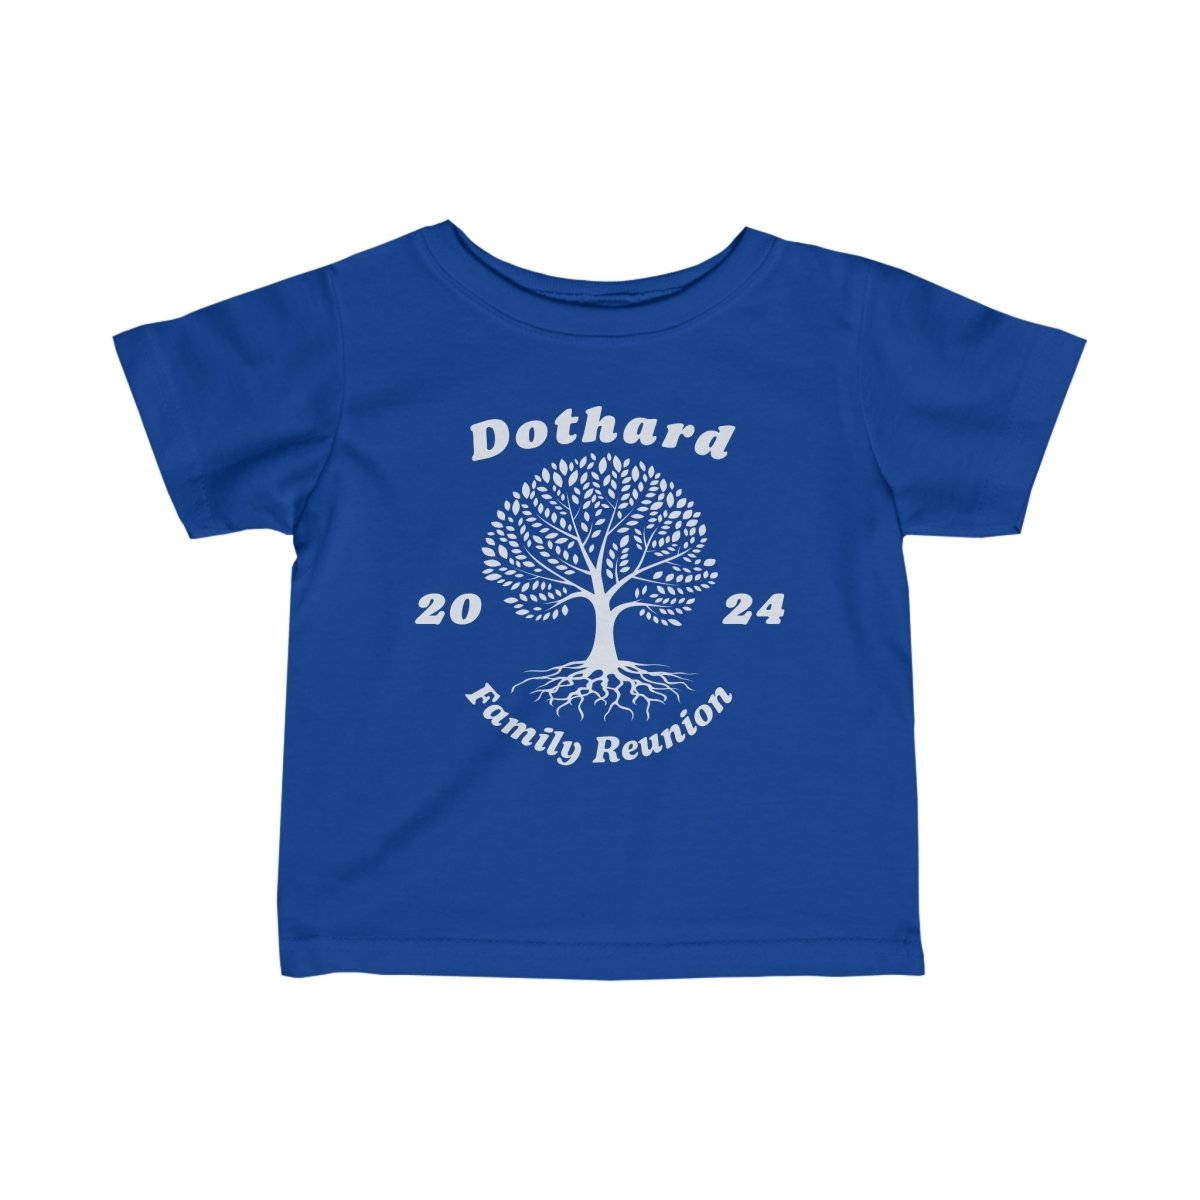 Dothard Family Reunion 2024 Tee - AI Tee Hero